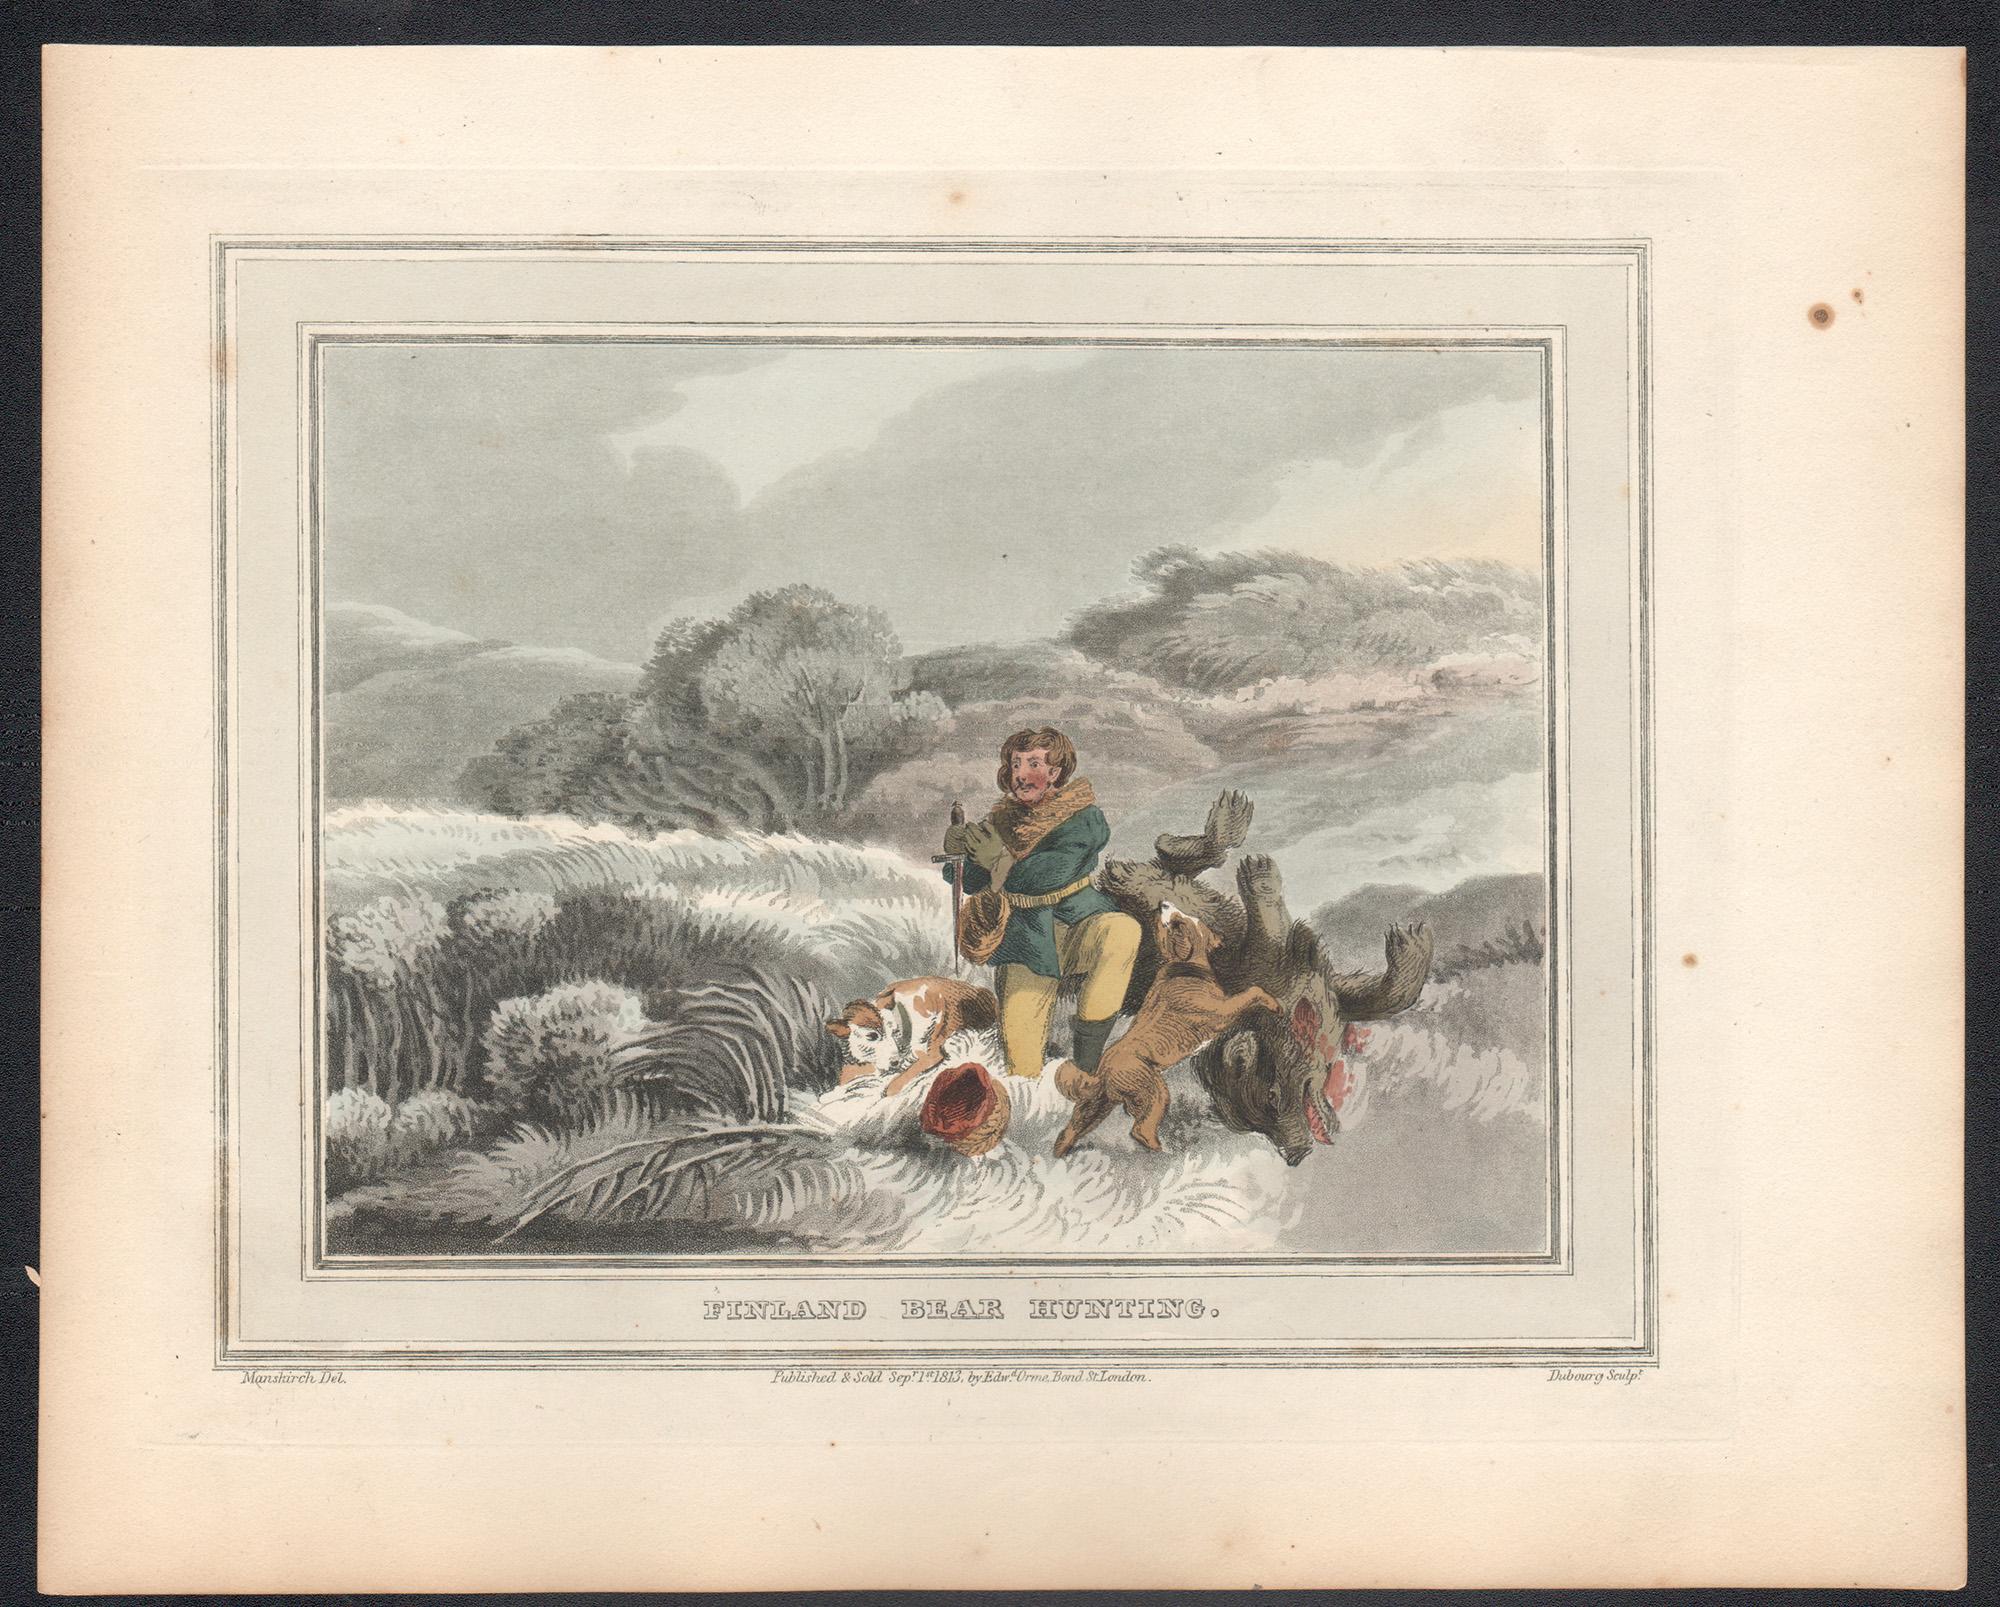 Finlande, gravure à l'aquatinte de chasse à la neige de chasse, 1813 - Print de Matthew Dubourg 